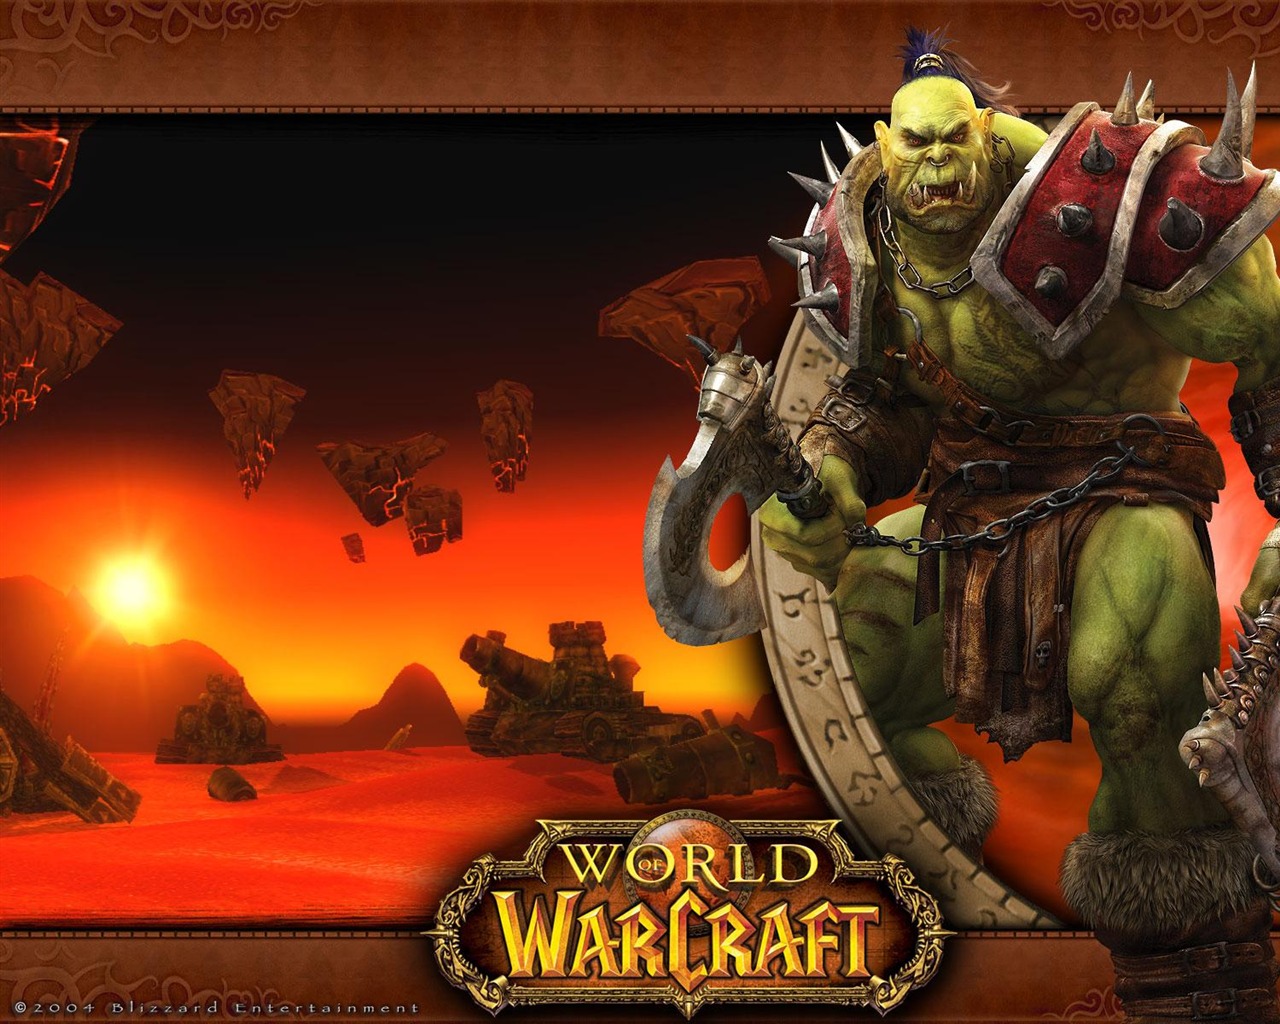 World of Warcraft 魔獸世界高清壁紙(二) #16 - 1280x1024